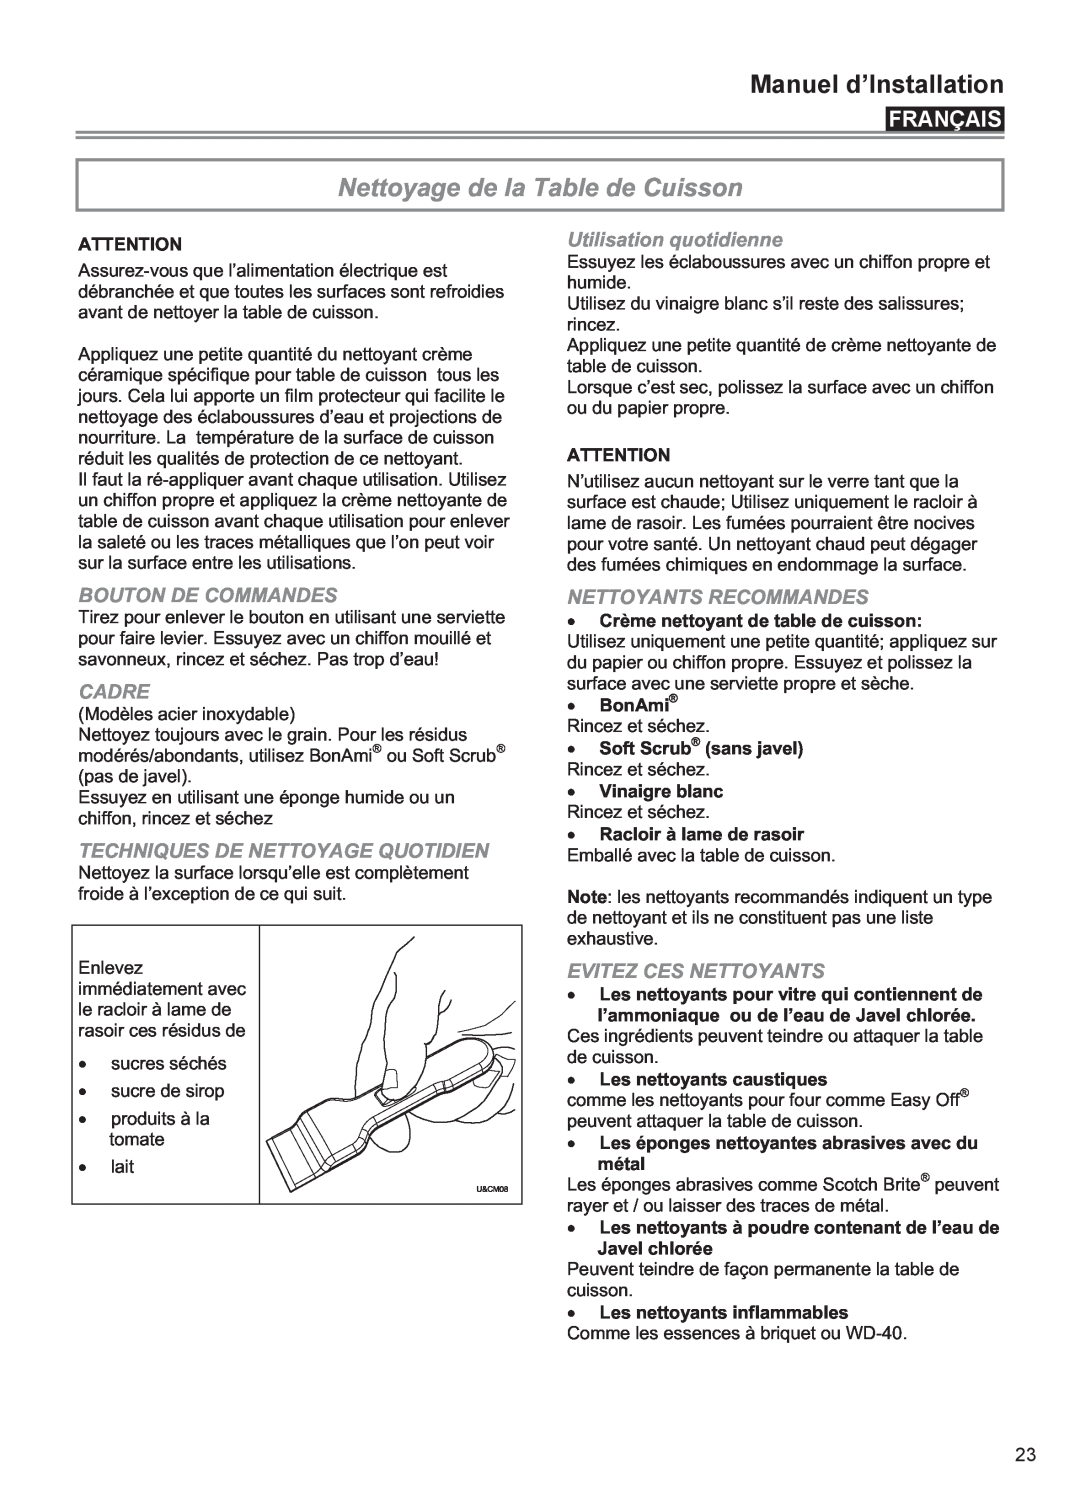 Bertazzoni P24 CER NE manual Nettoyage de la Table de Cuisson, Utilisation quotidienne, Bouton De Commandes, Cadre, BonAmi 